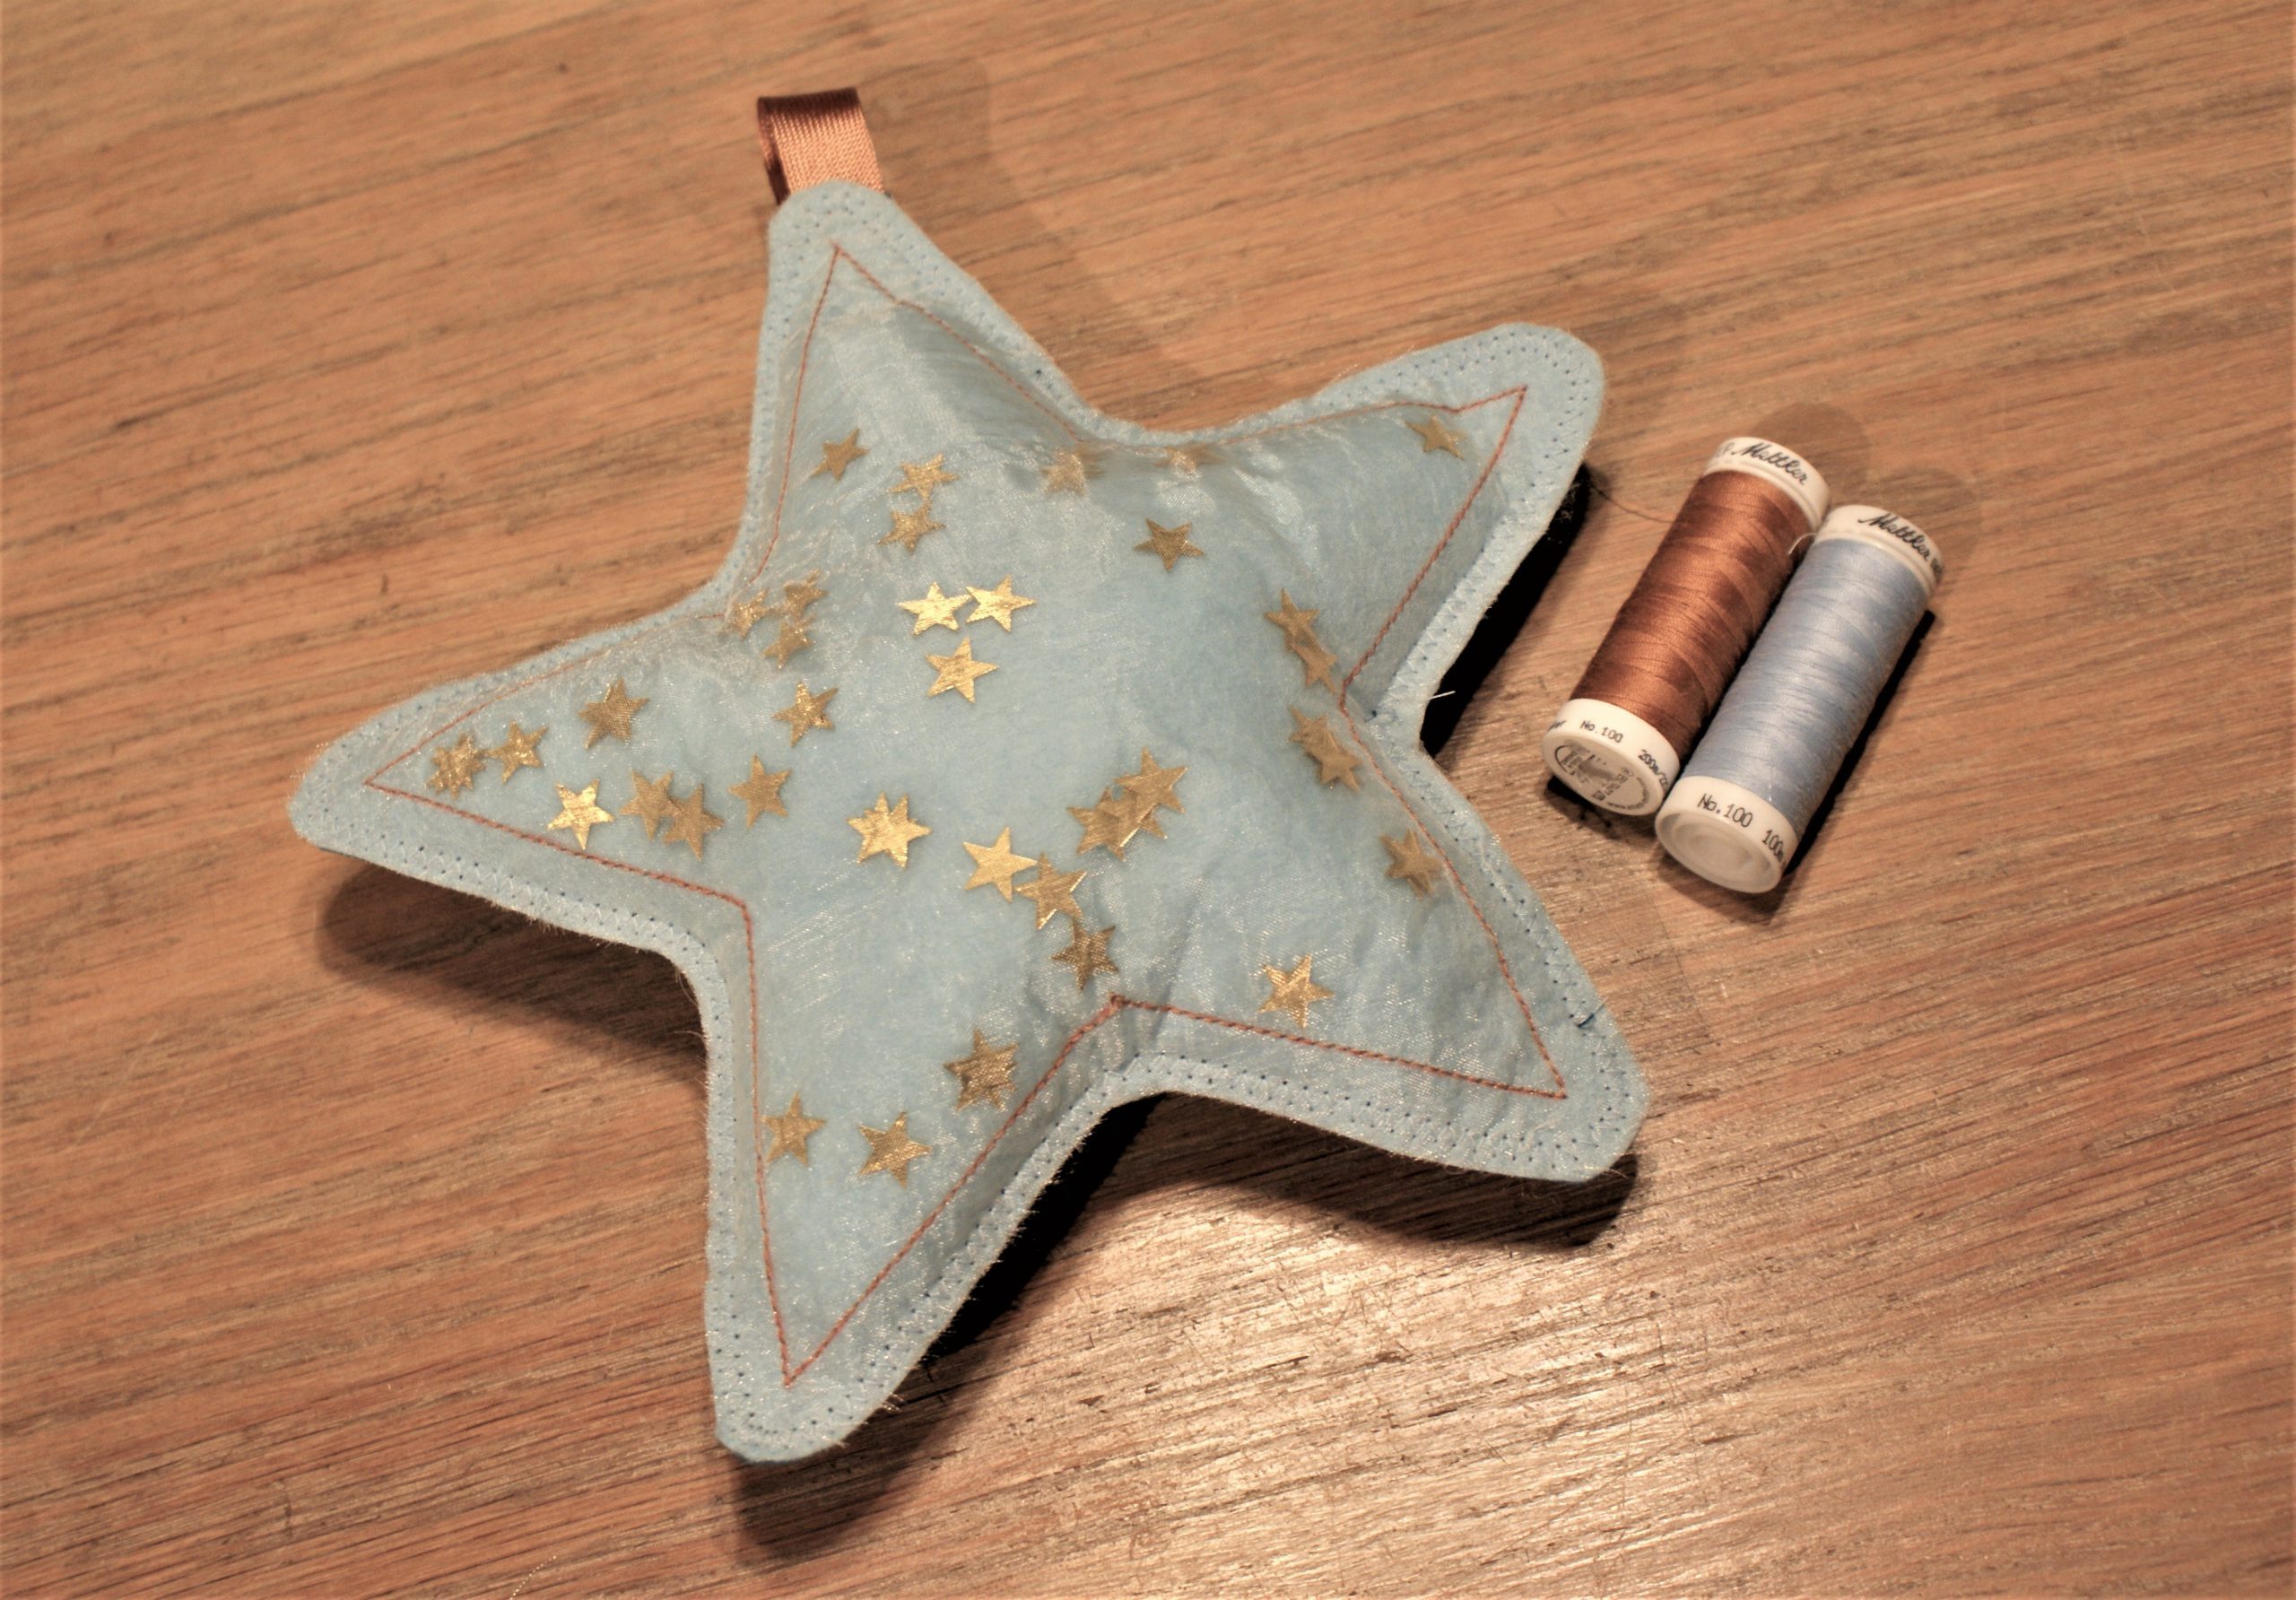 Sew a softie in July: stik een knuffel ster Bernina naaien met kinderen - beginners naaien